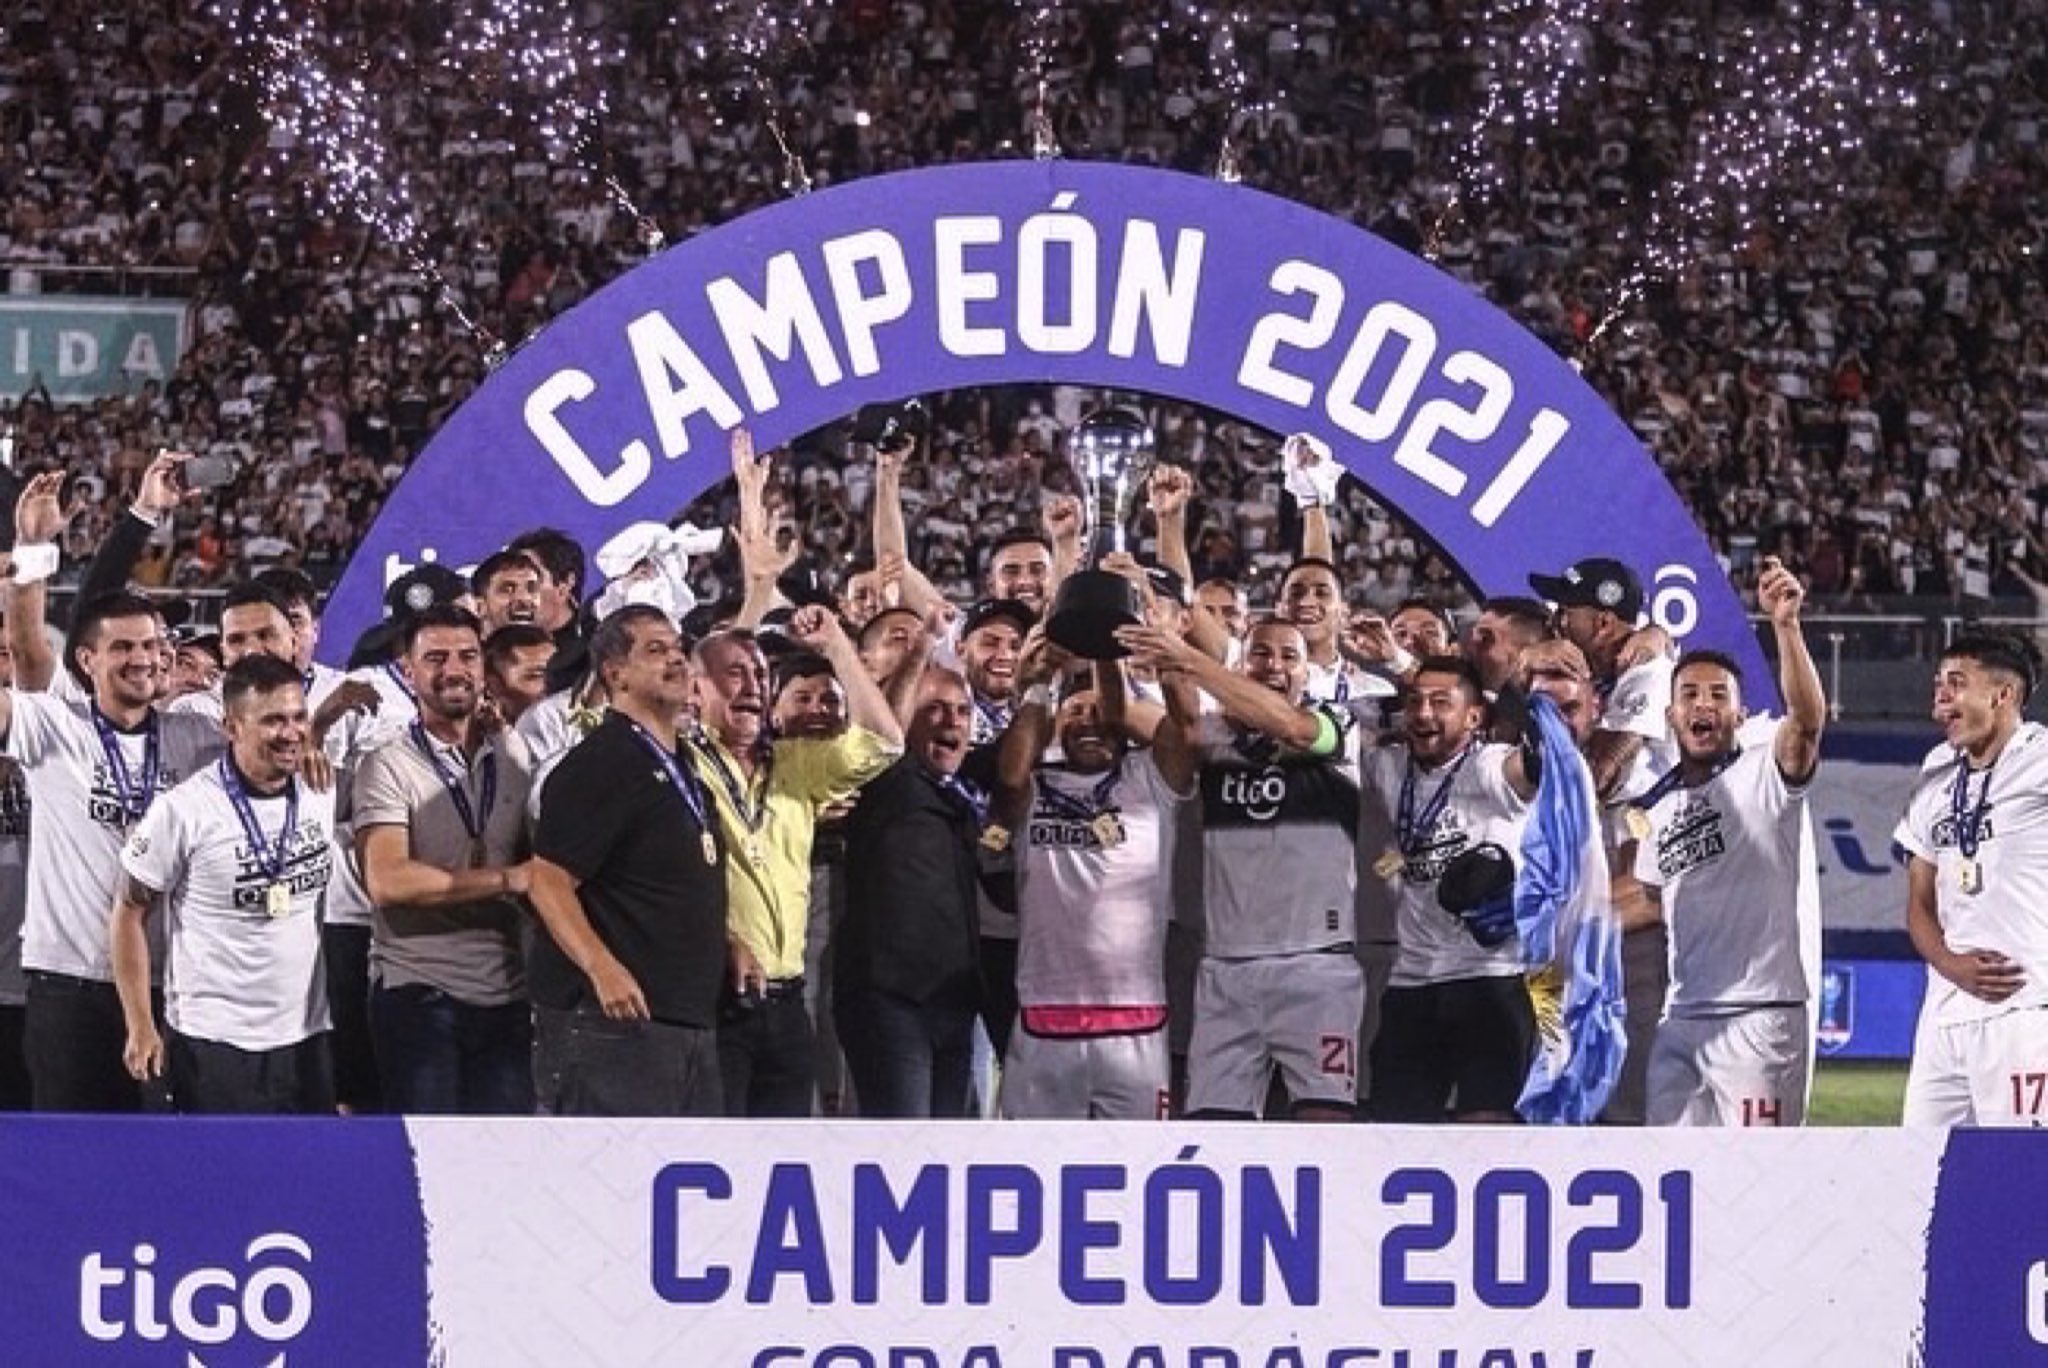 El Expreso Decano se llevó la tercera edición de la Copa Paraguay. Foto: APF.